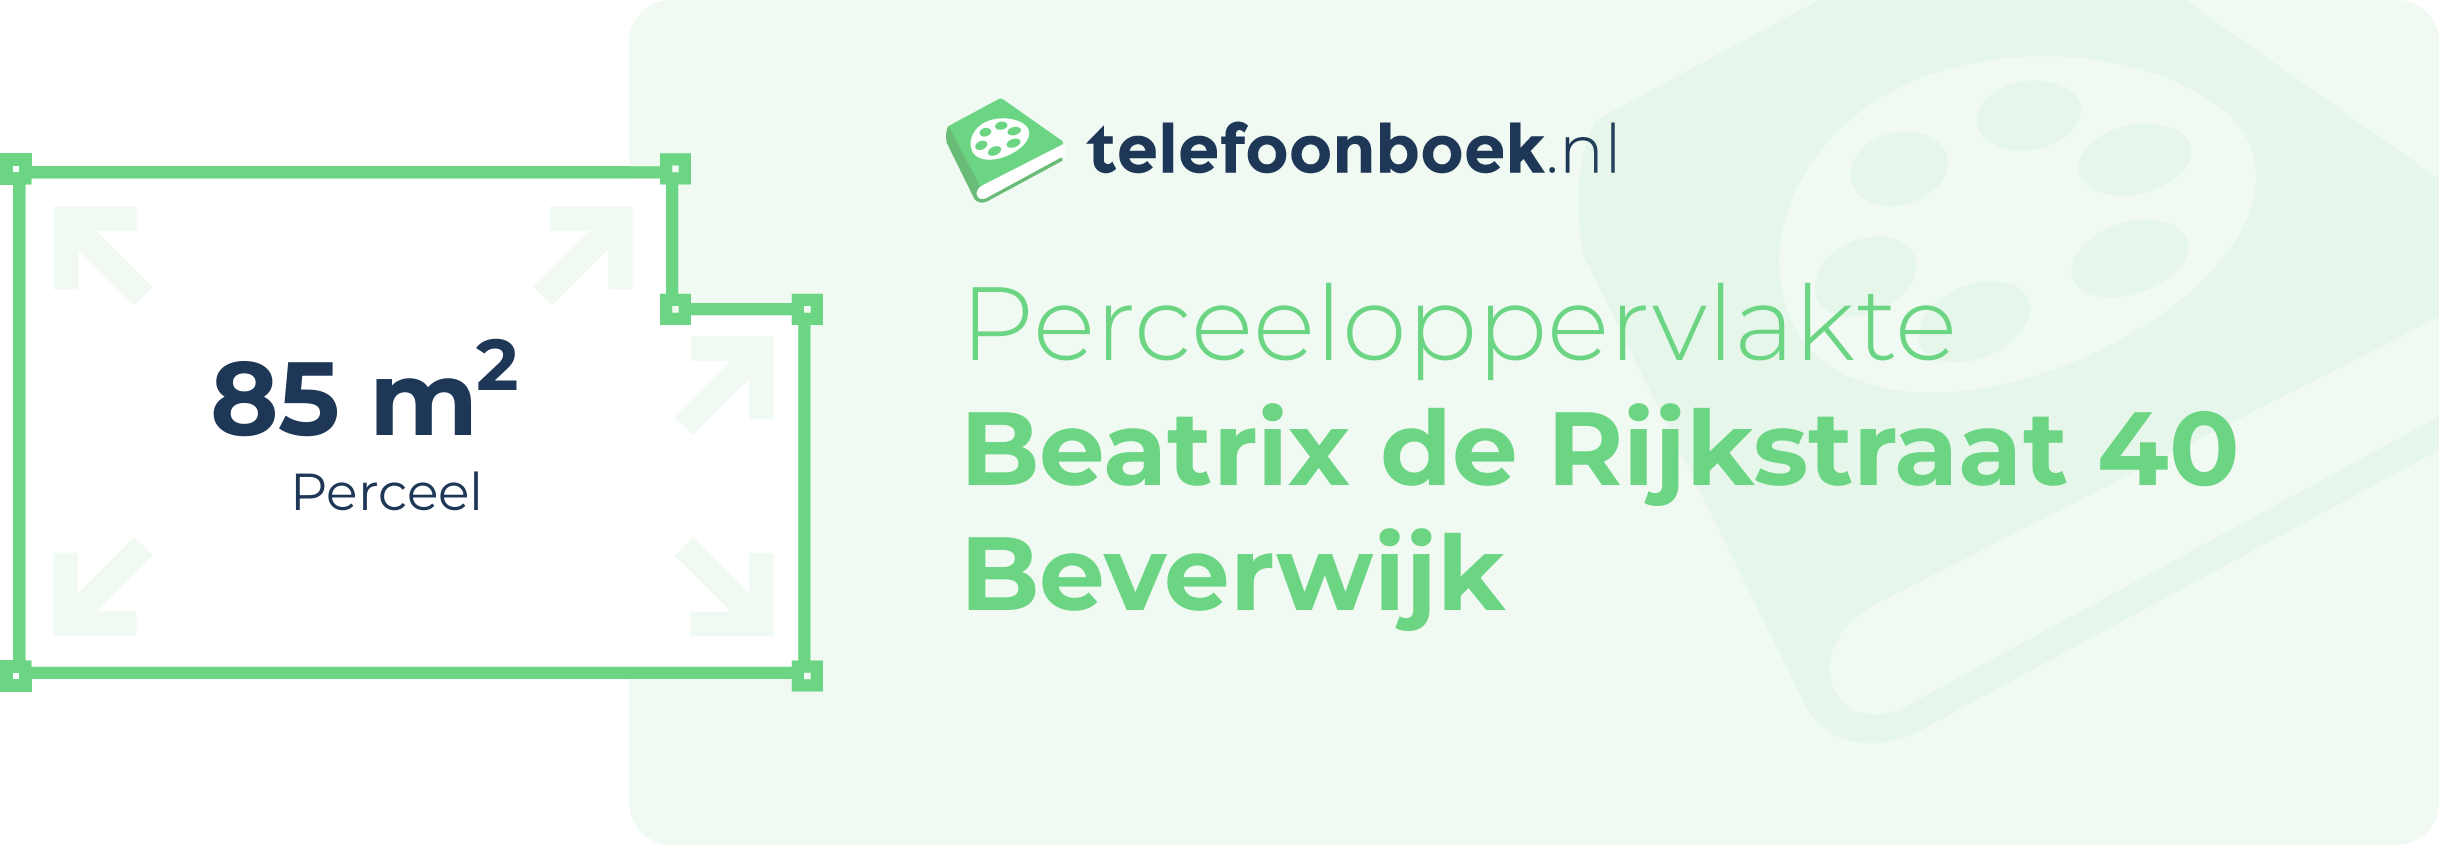 Perceeloppervlakte Beatrix De Rijkstraat 40 Beverwijk